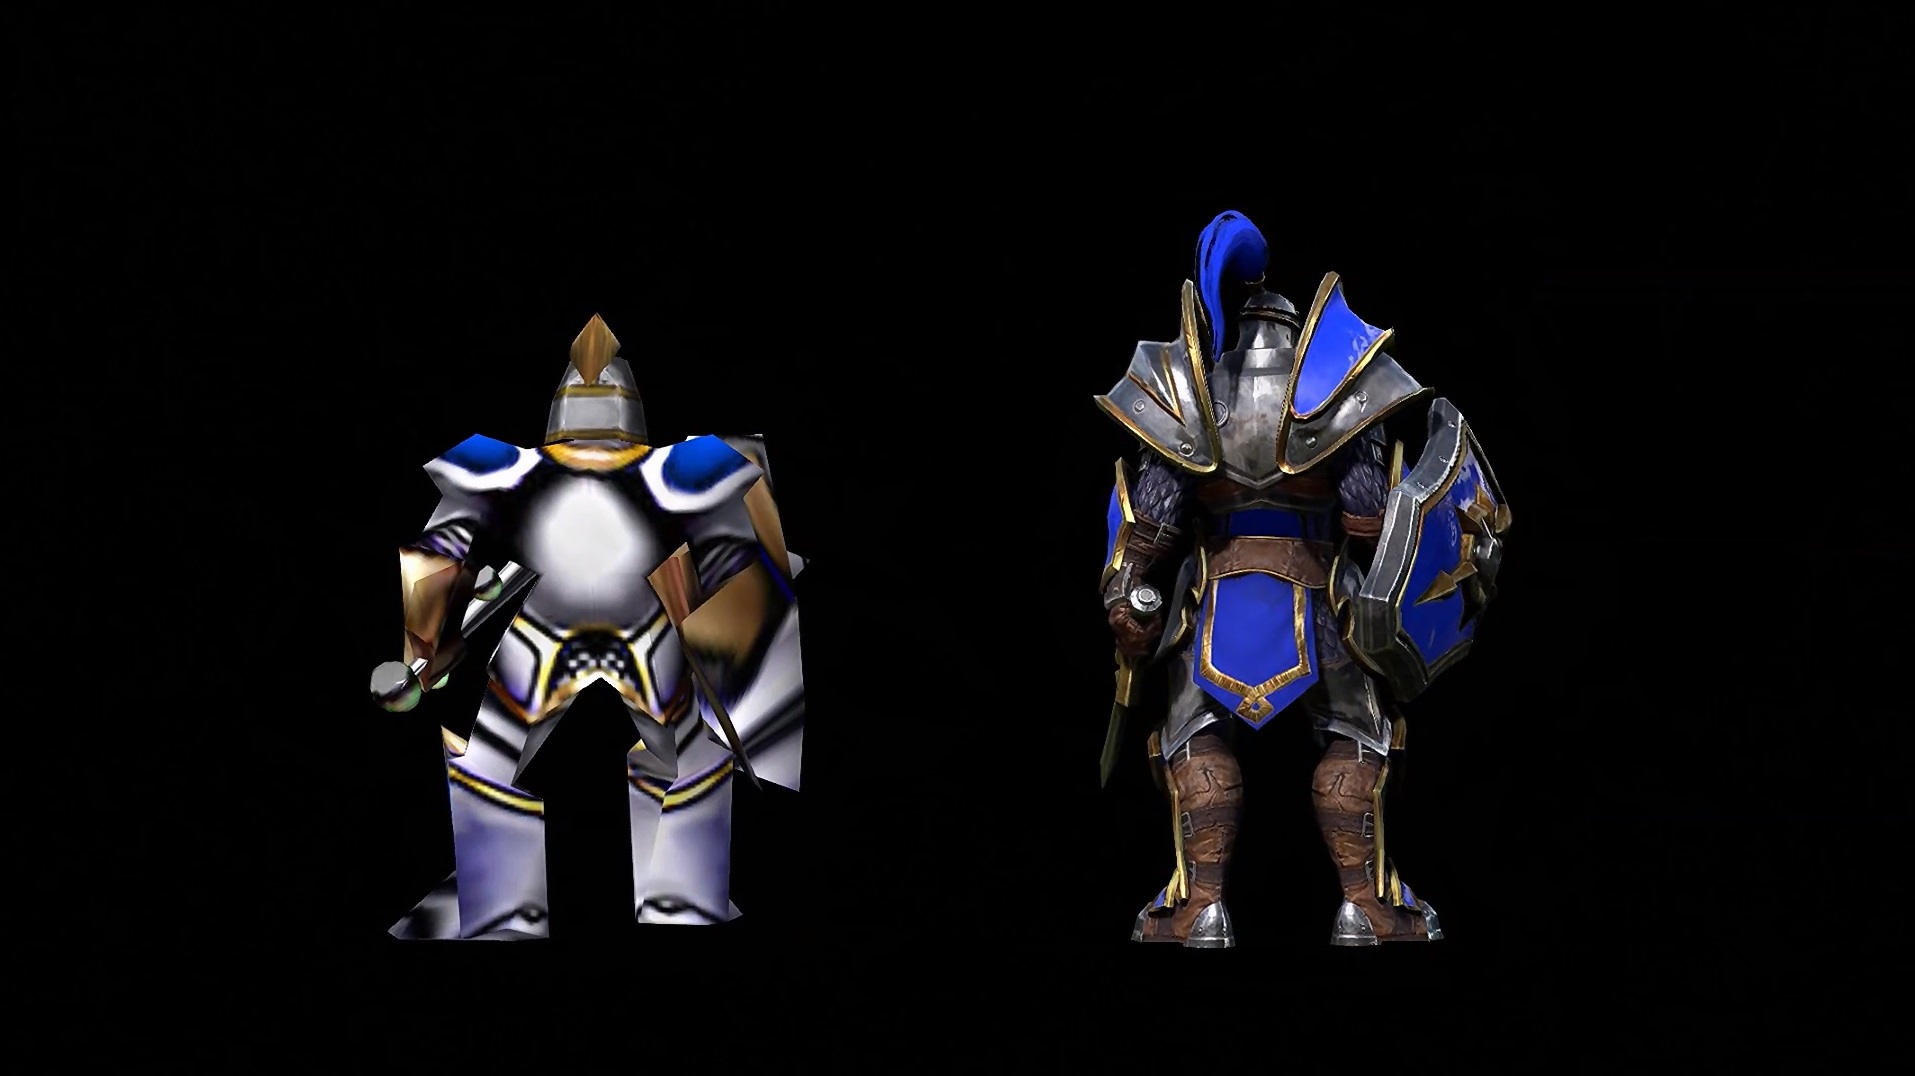 Capture d'écran de la conférence Inside Warcraft III: Reforged de la BlizzCon 2018.